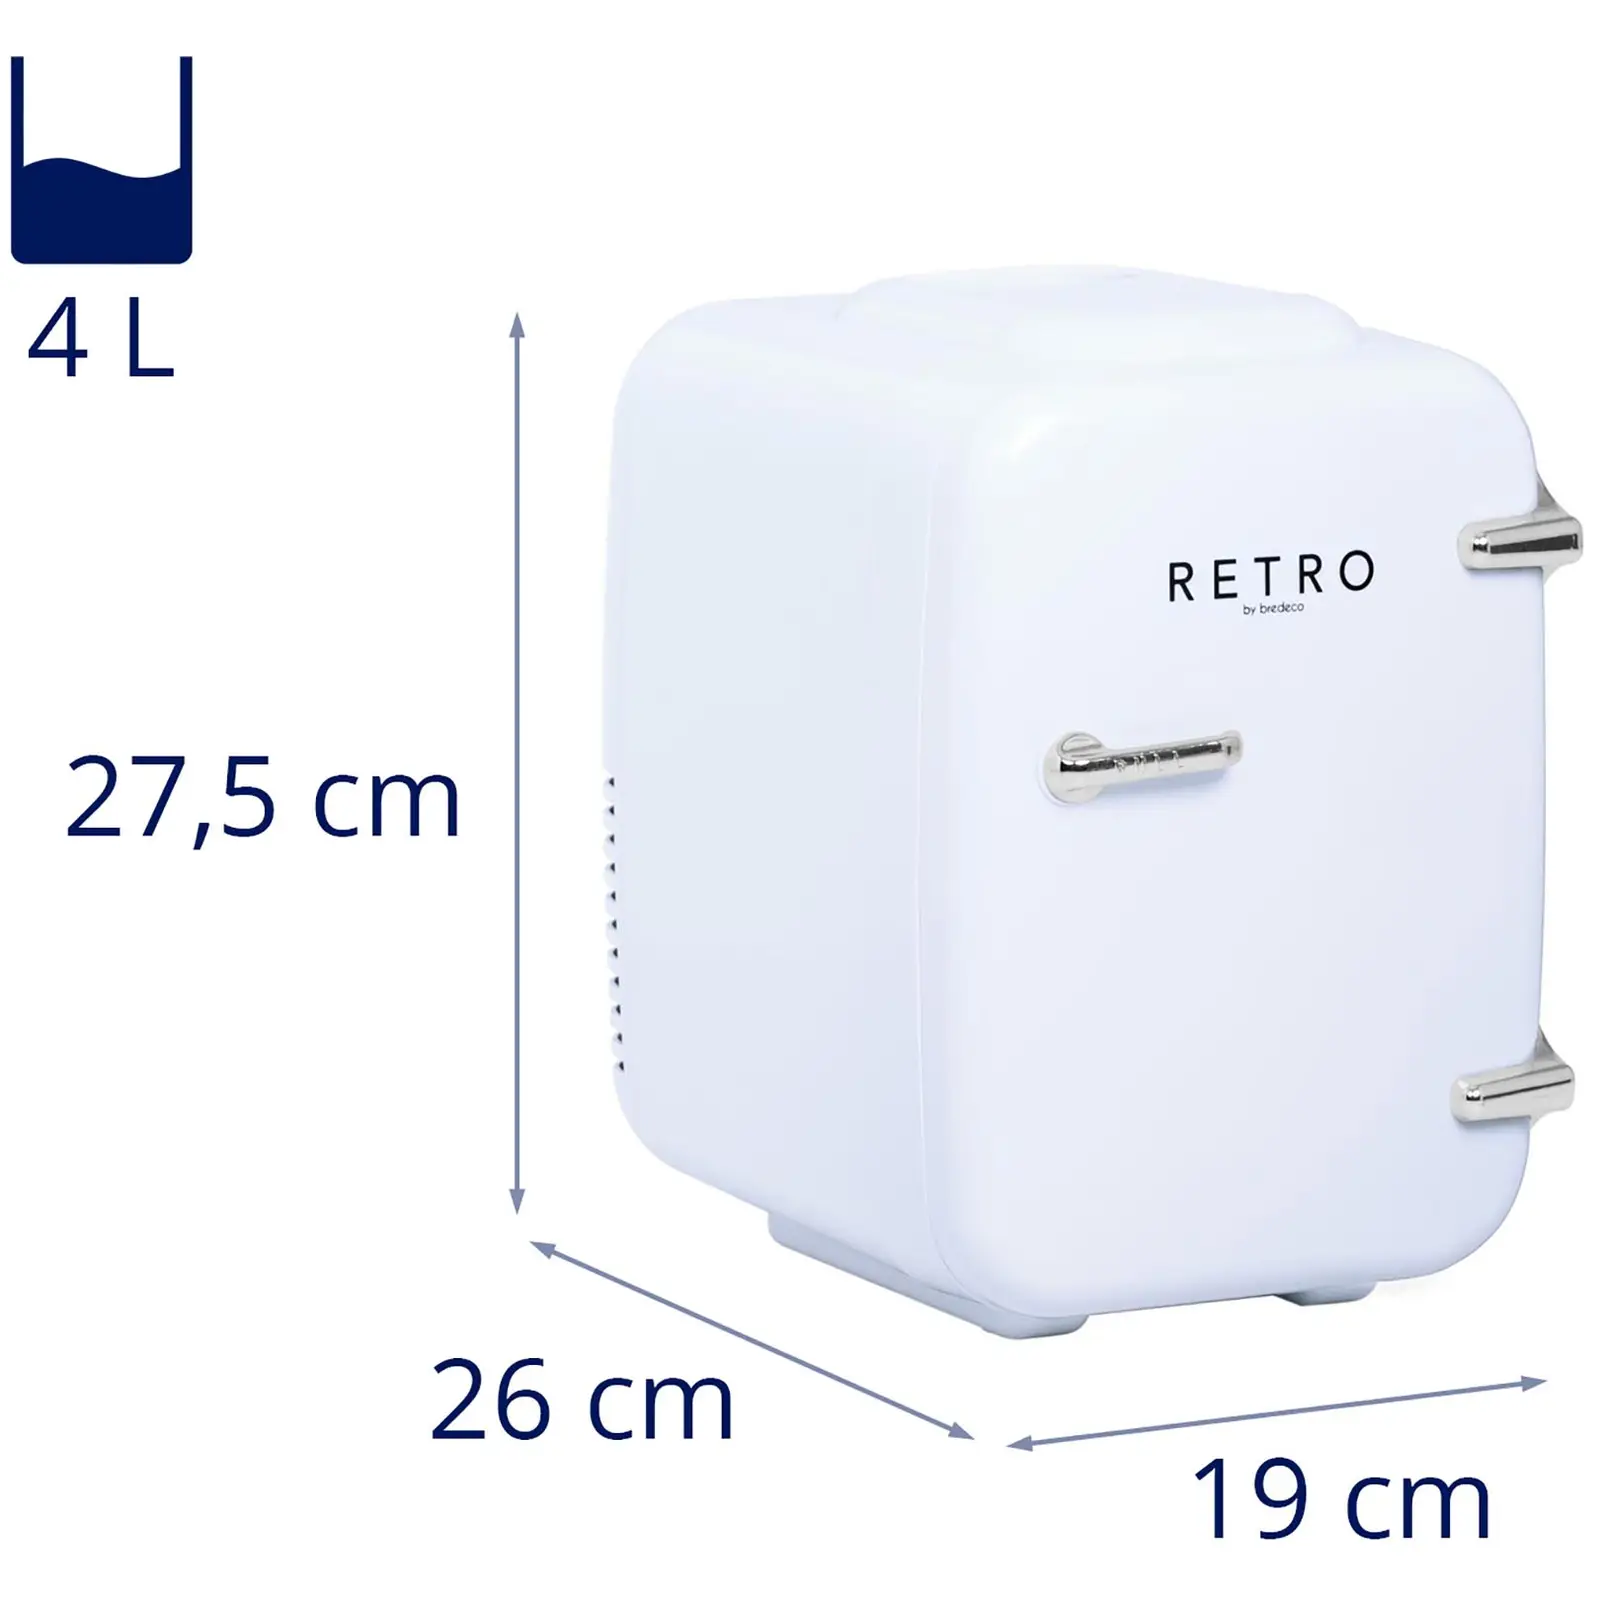 Mini-køleskab - 4 L - hvidt